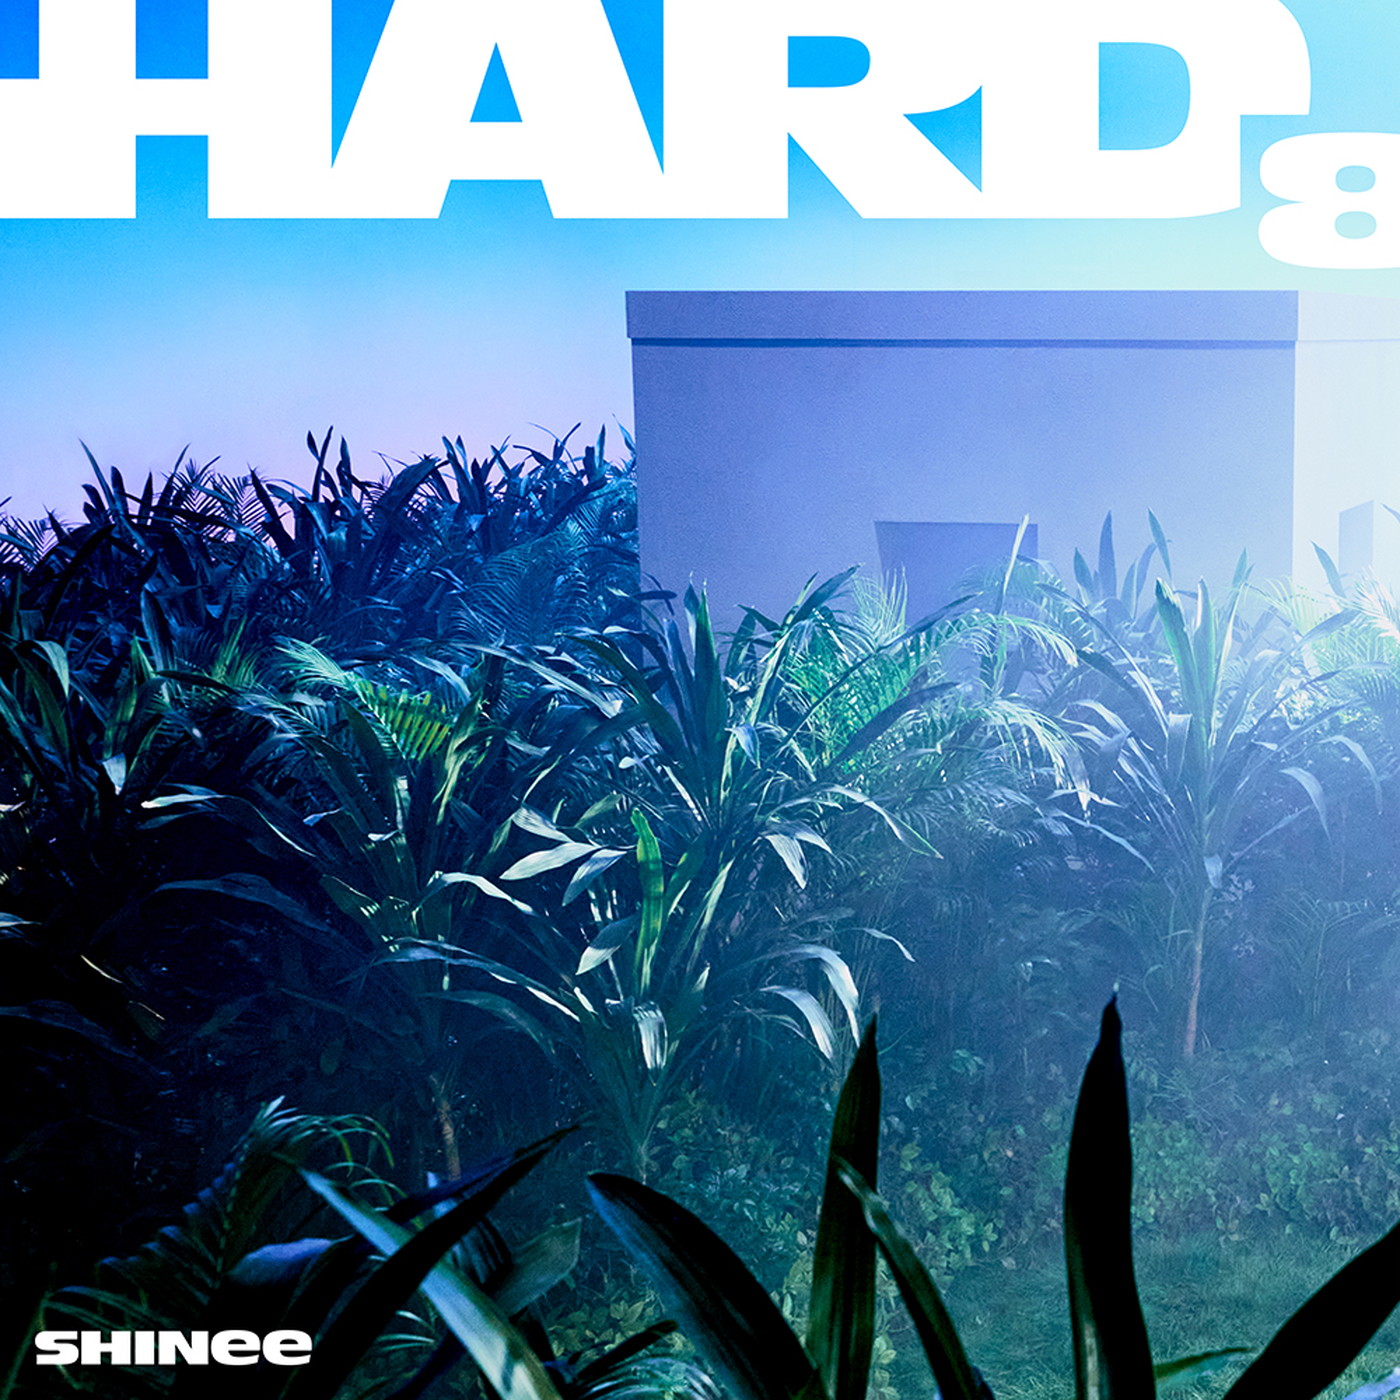 SHINee、8枚目のフルアルバム『HARD』がUNIVERSAL MUSIC STORE限定特典付きで販売決定